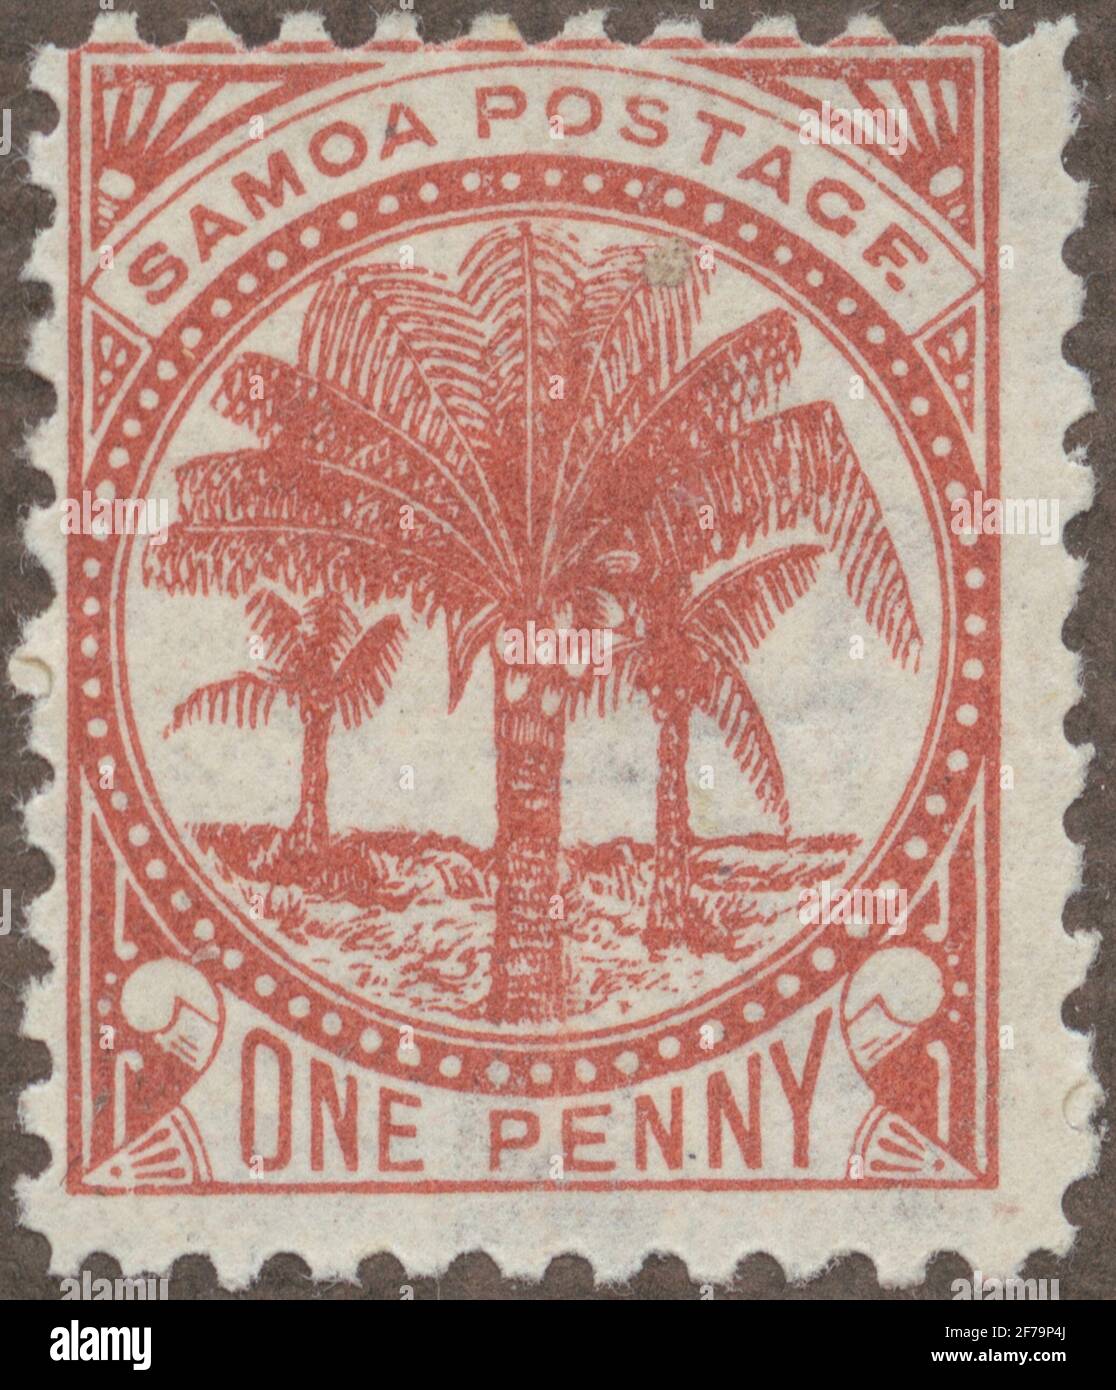 Die Briefmarke der philatelistischen Motivsammlung von Gösta Bodman begann 1950.die Briefmarke aus Samoa, 1899. Motive von Kokospalmen mit Früchten. Stockfoto